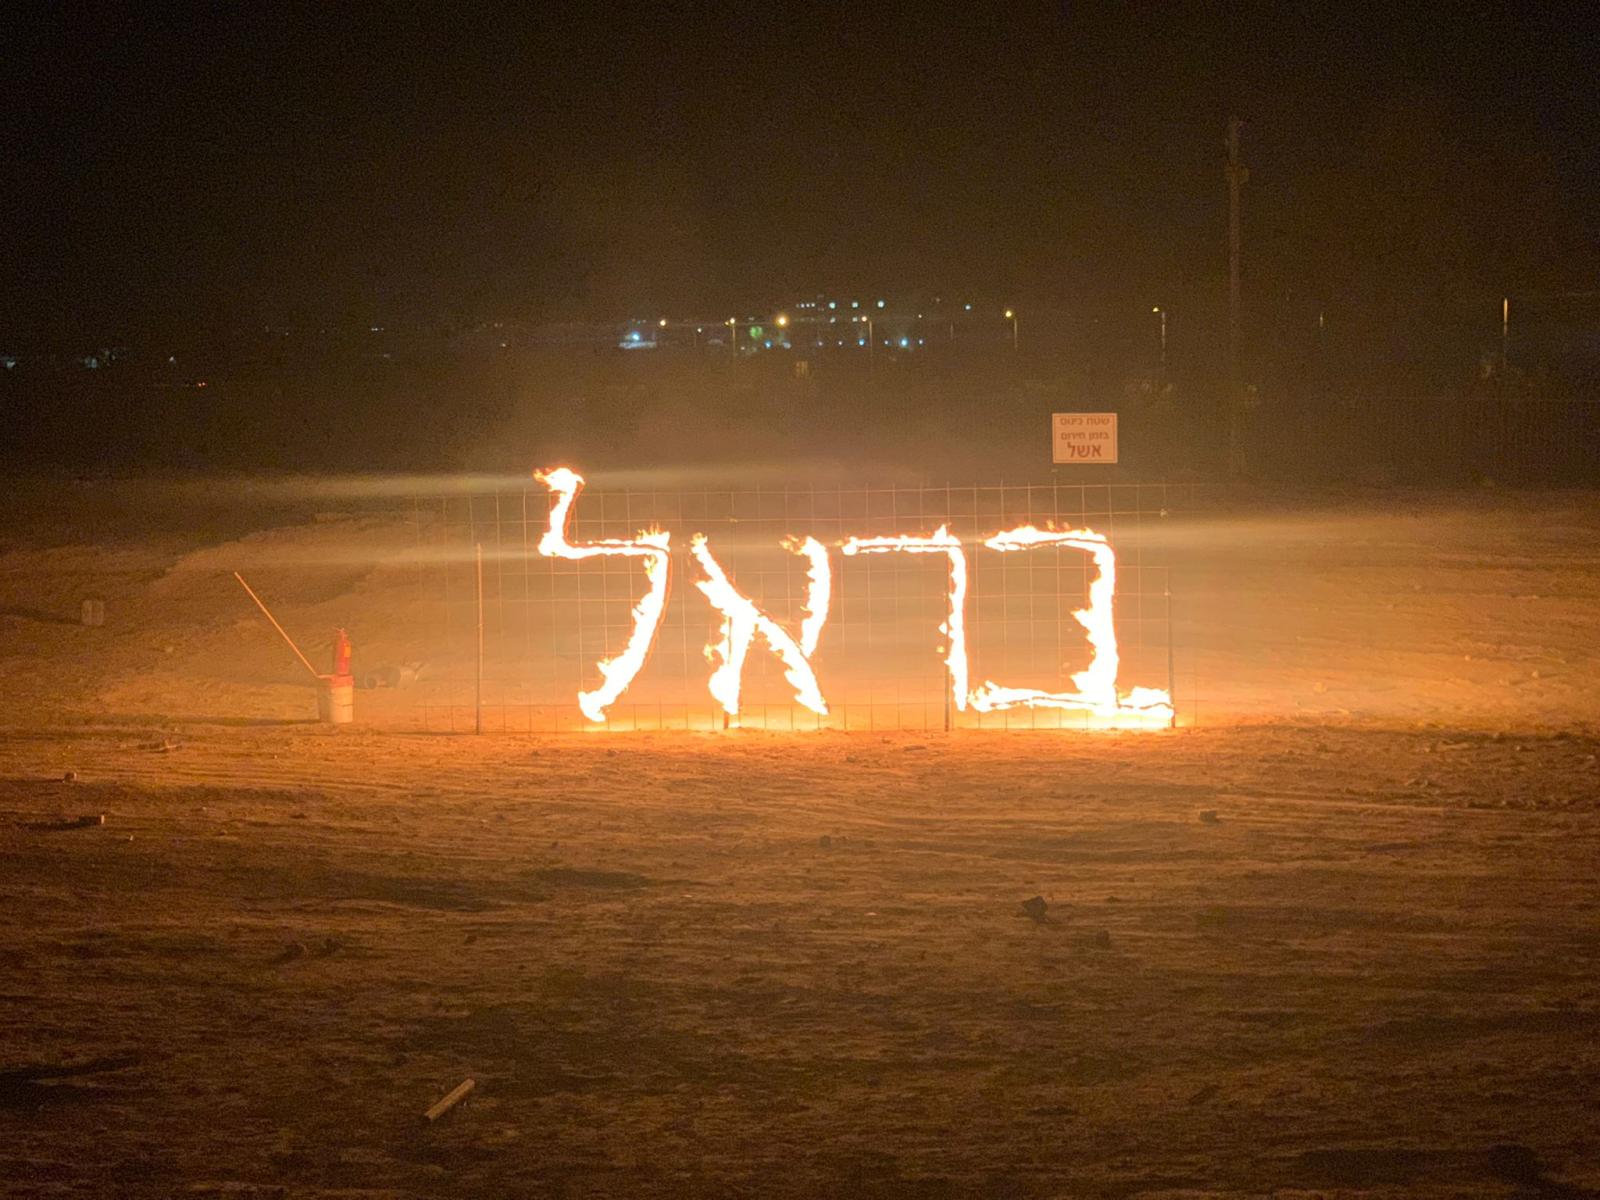 כתובת אש שהכינו התלמידים (צילום: כפר הנוער אשל הנשיא)